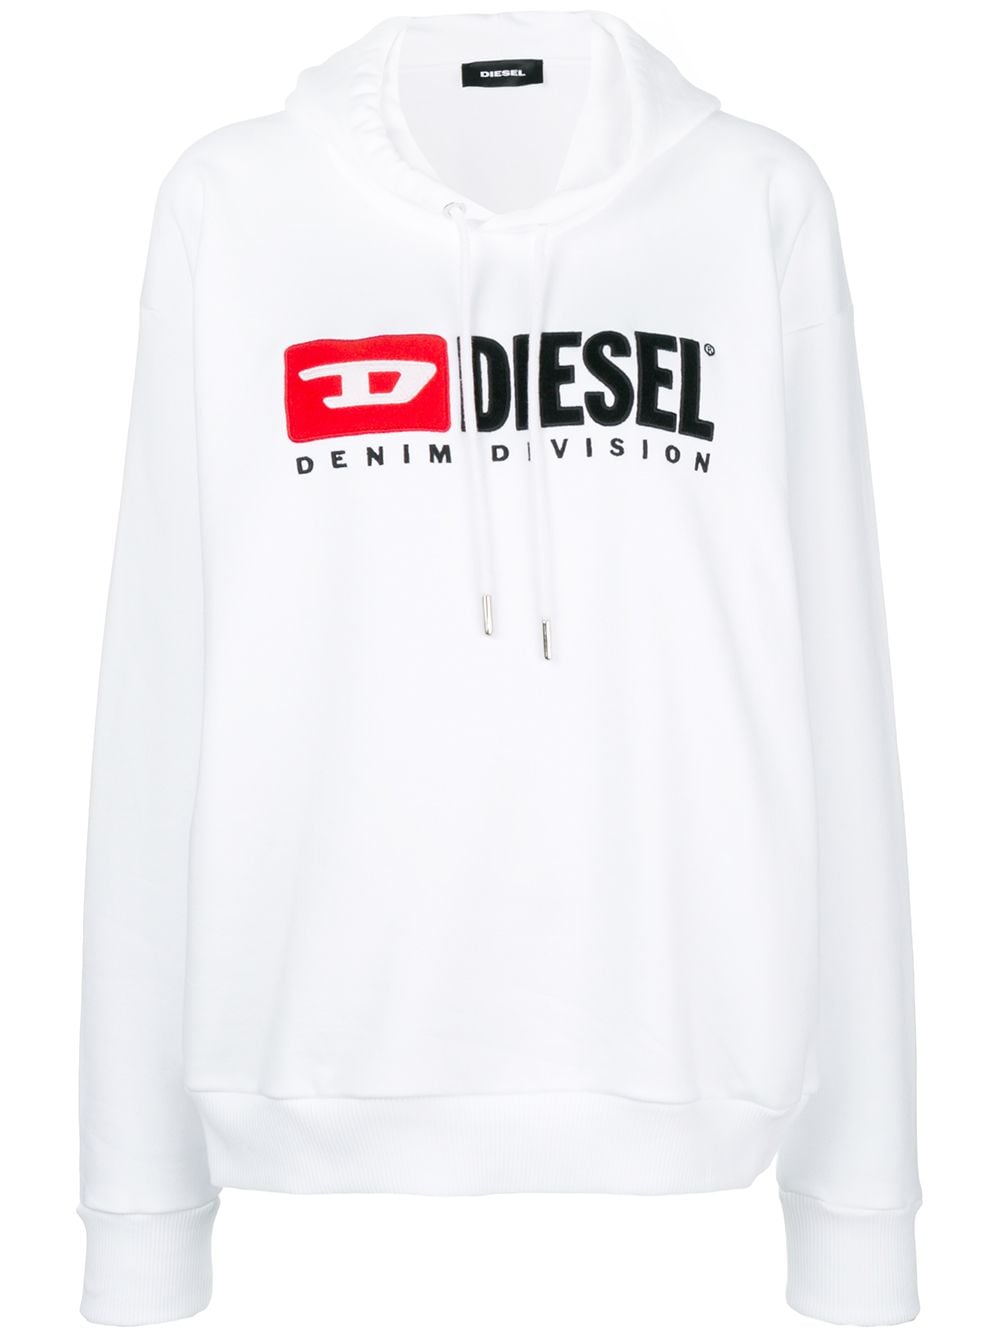 Diesel Denim Vision logo hoodie от Diesel